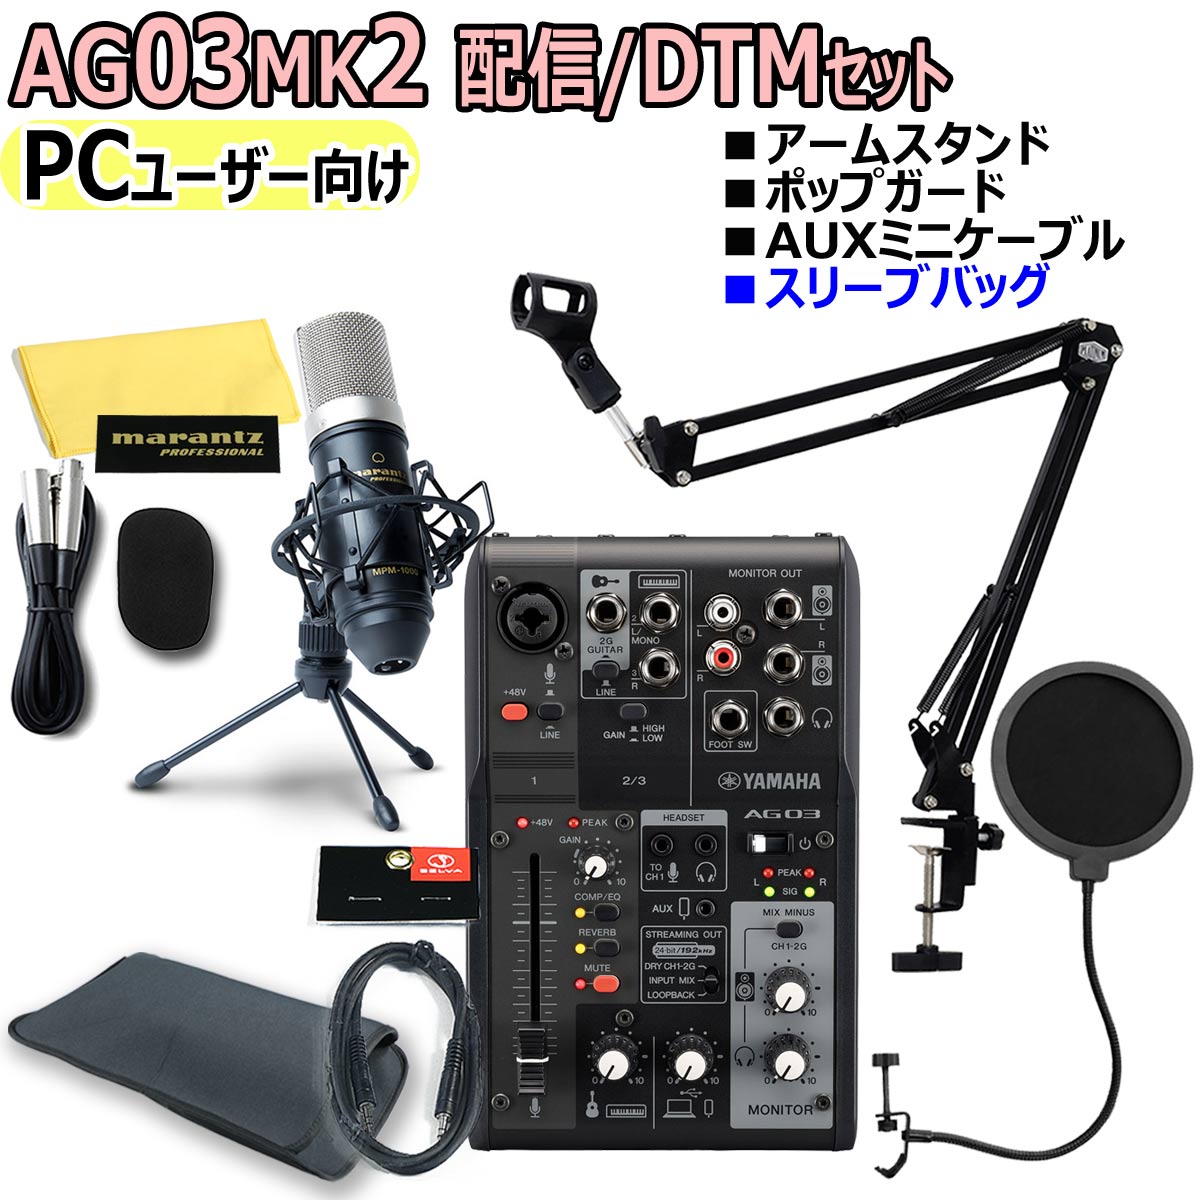 【あす楽対象商品】YAMAHA / AG03MK2 BLACK PCユーザー向け 配信/DTMセット【PNG】